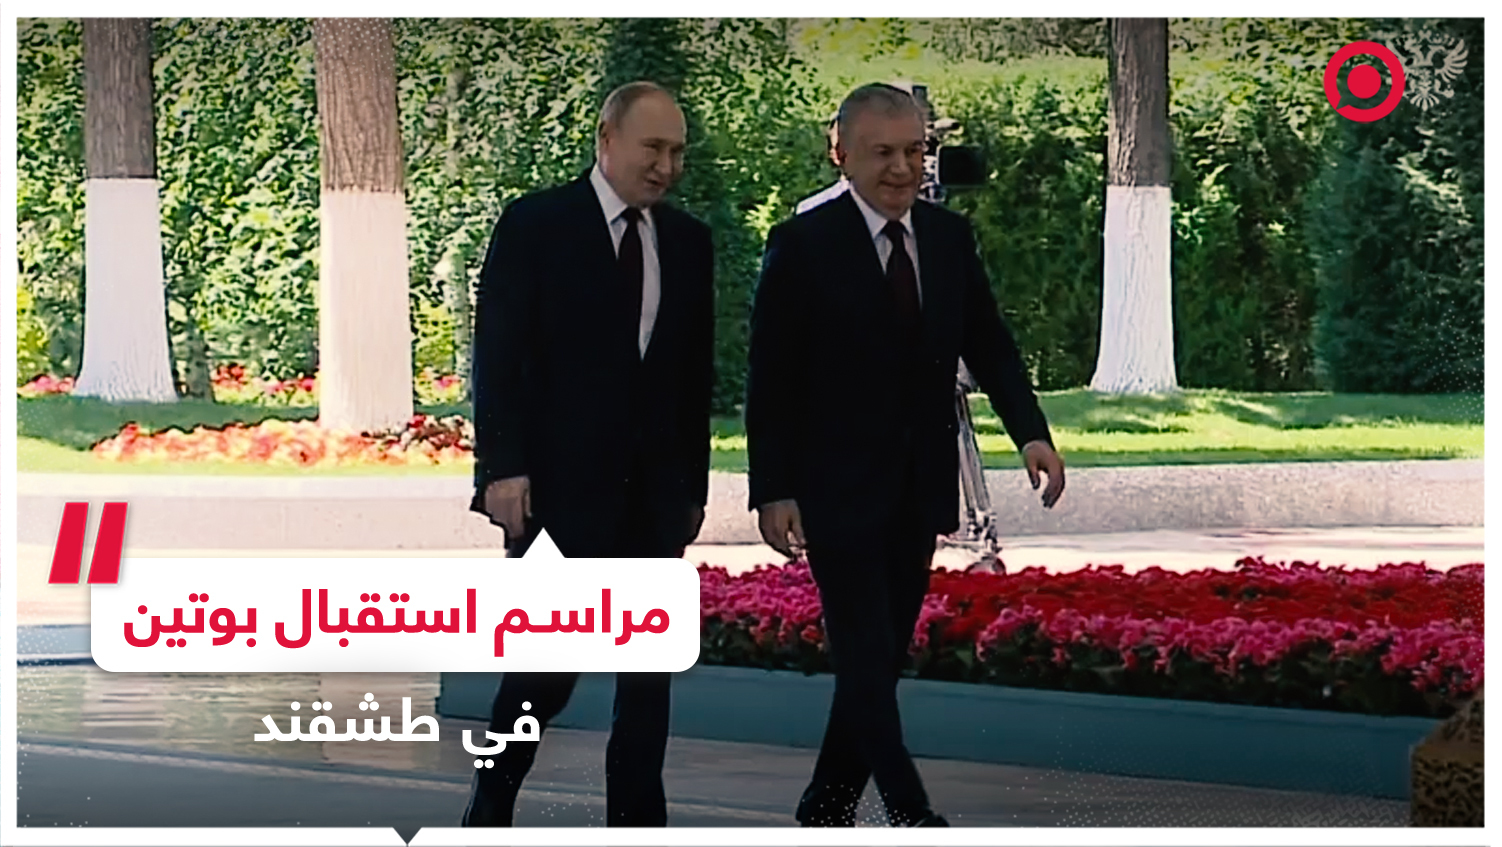 مراسم الاستقبال الرسمية للرئيس بوتين في القصر الرئاسي بطشقند